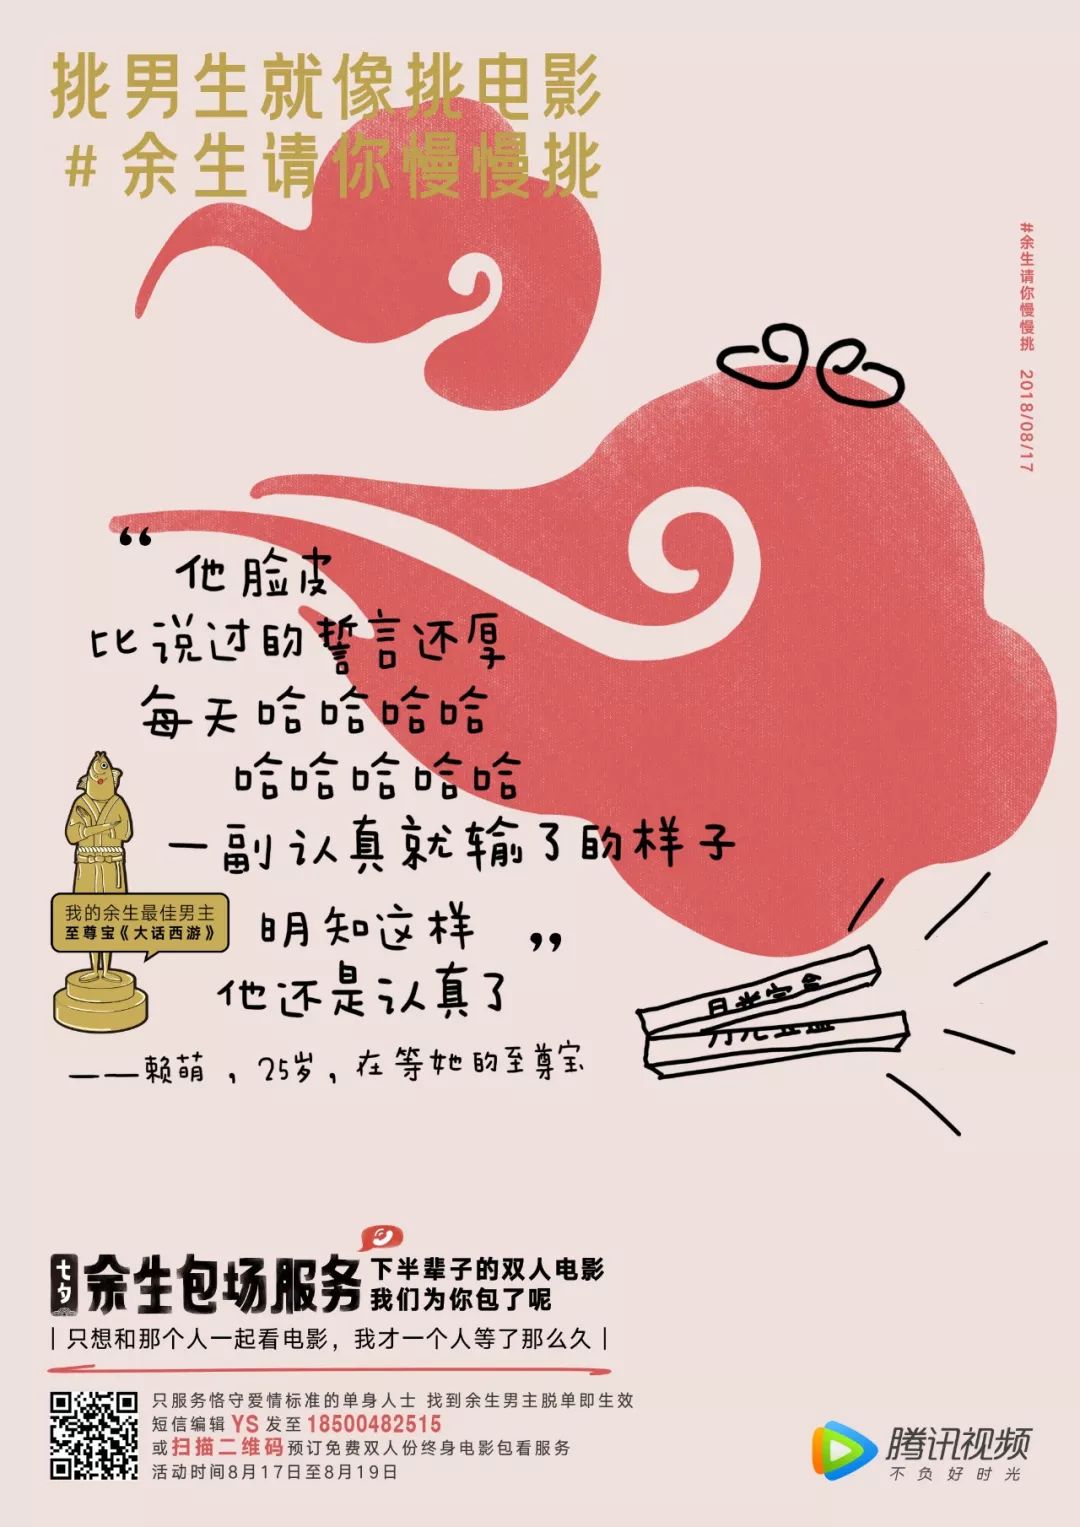 这个七夕，上海竟然有人给未来的恋人预订了“余生电影票”